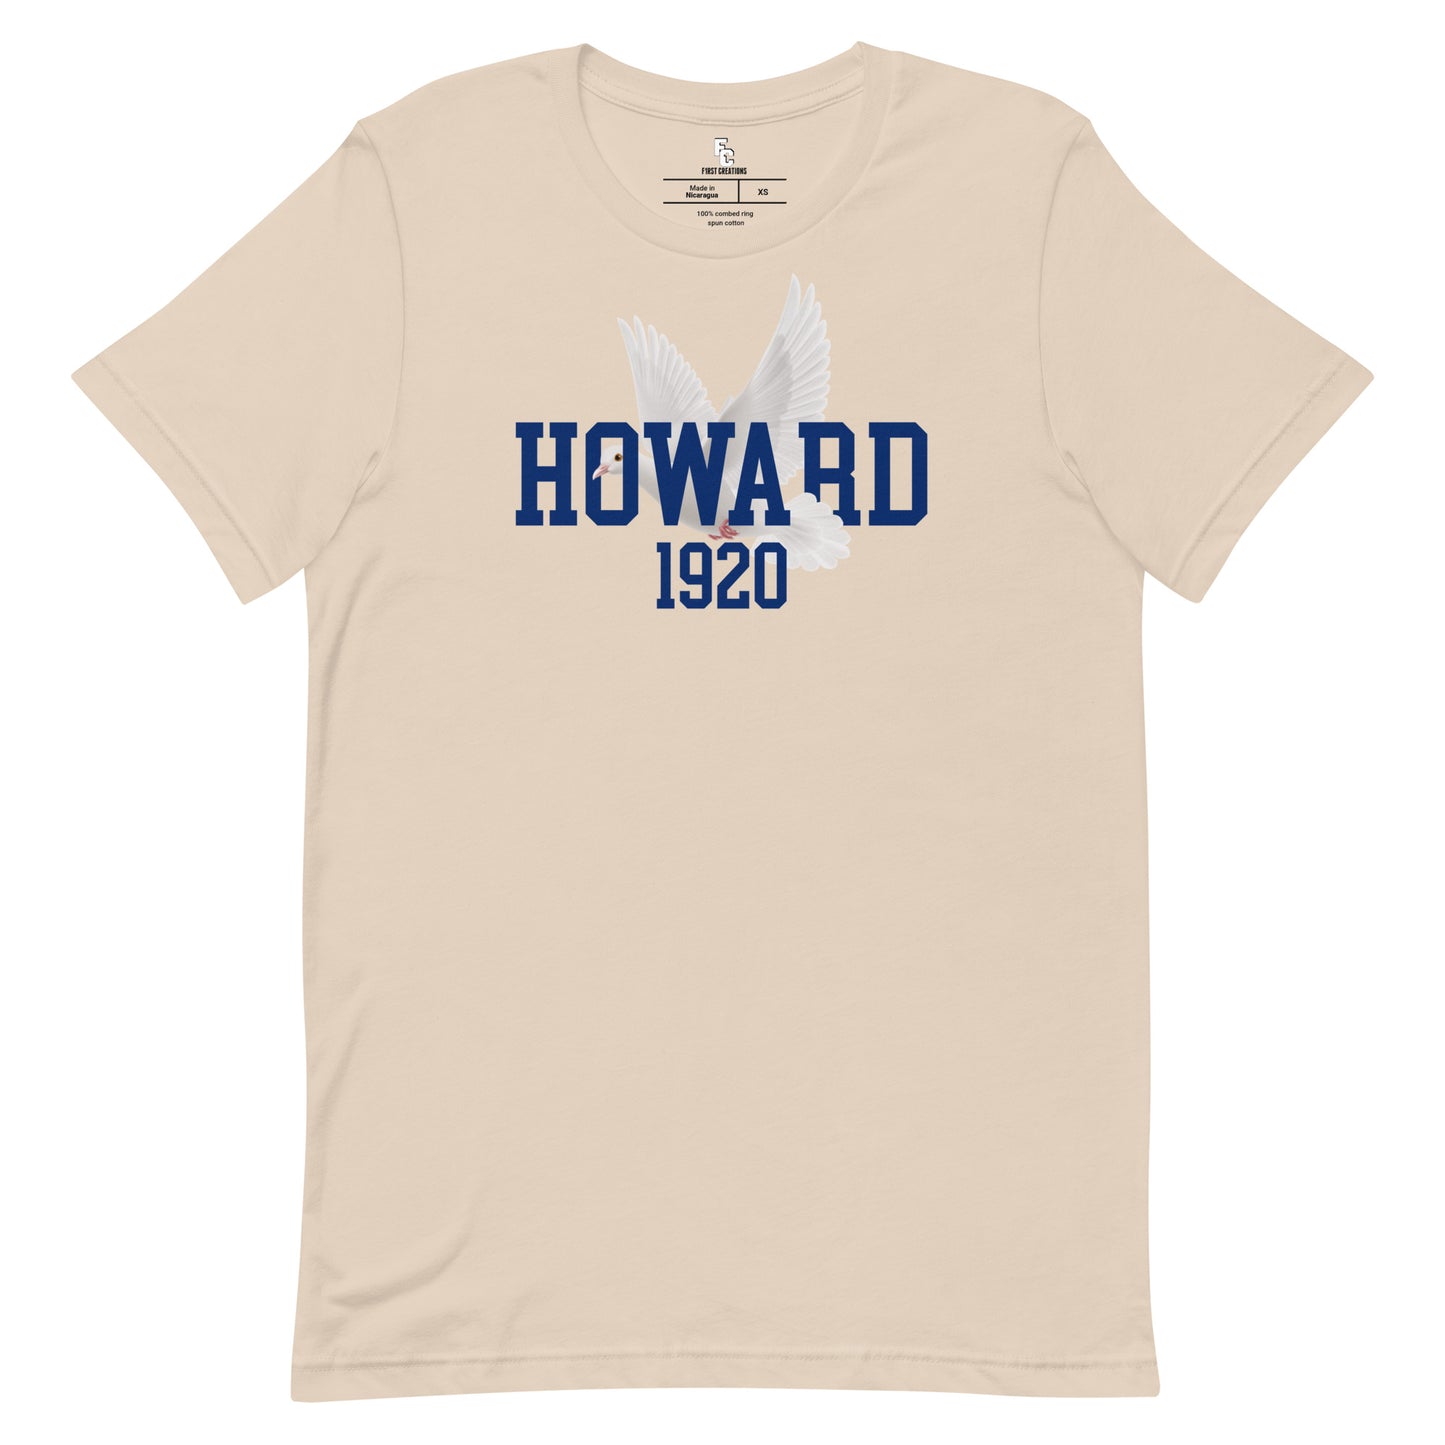 Howard 1920